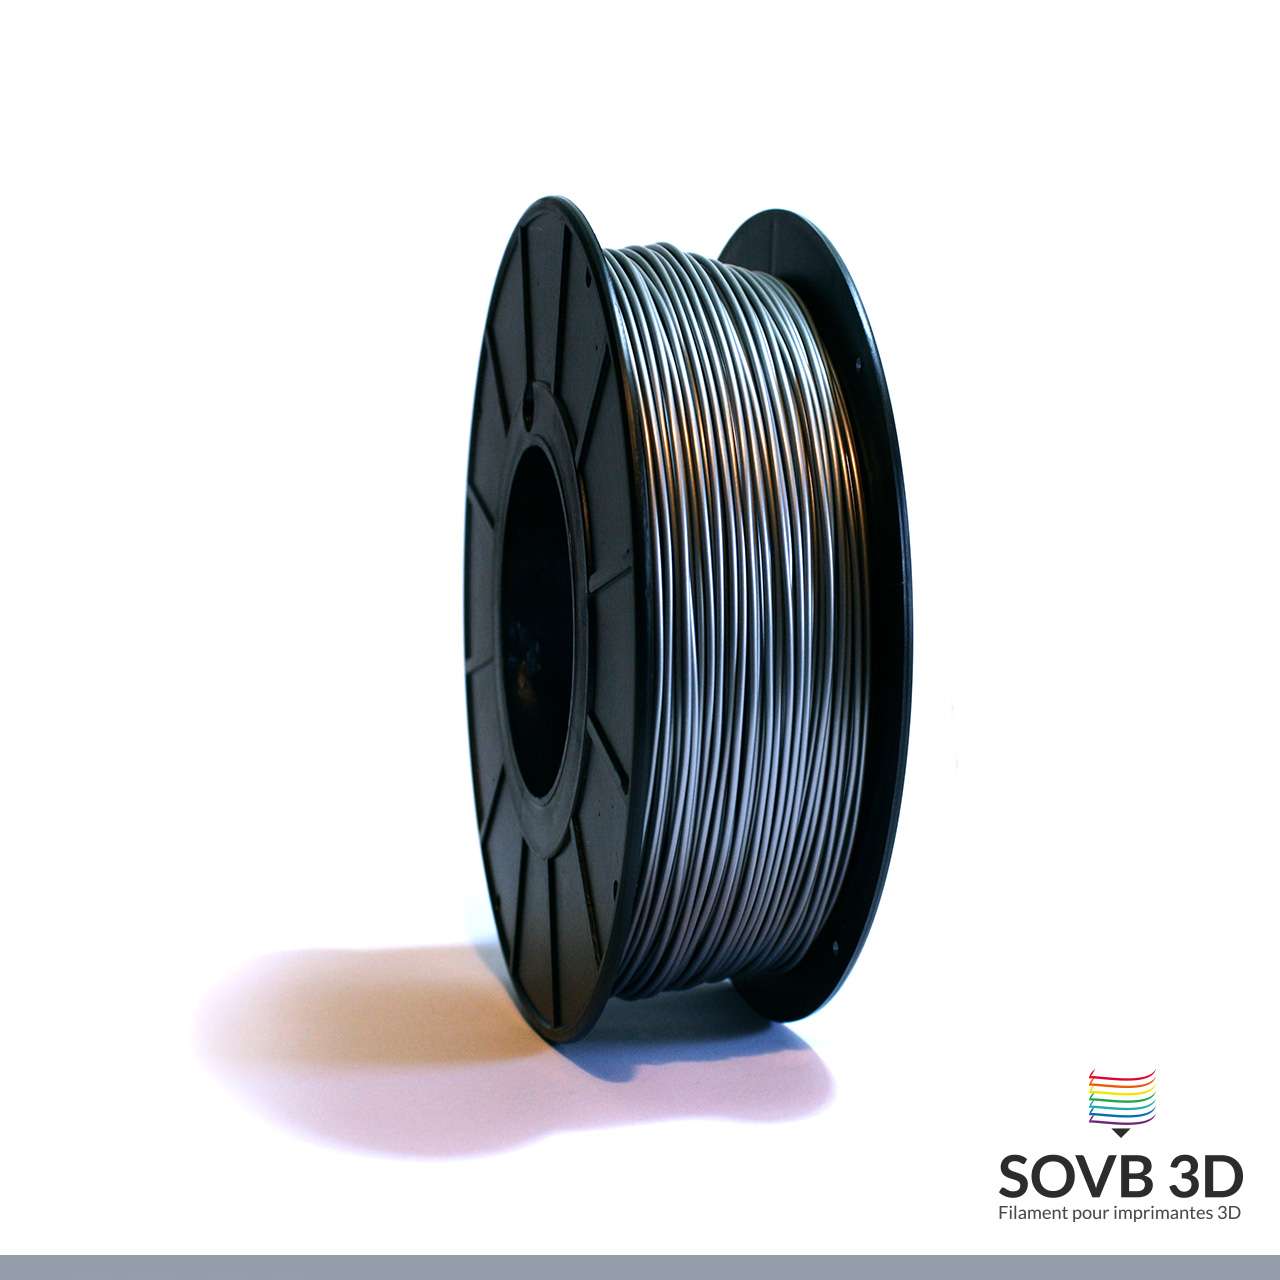 par 5 mètres Filament pla 1.75 mm pour imprimantes 3D argent élément fibre thread